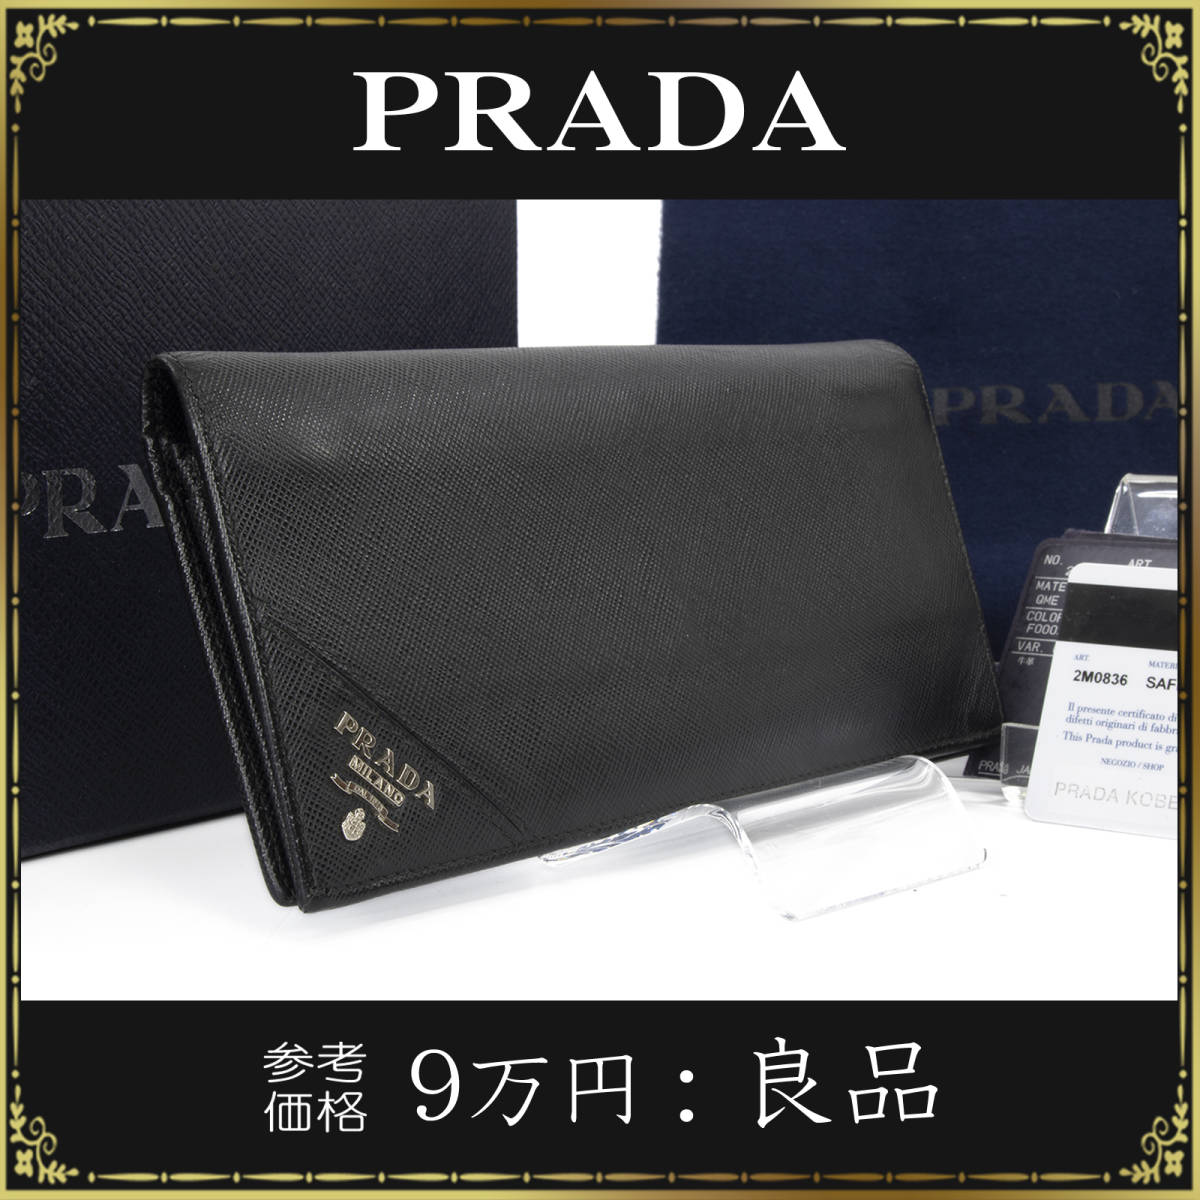 プラダの長財布・正規品・サフィアーノレザー・ブラック・黒色